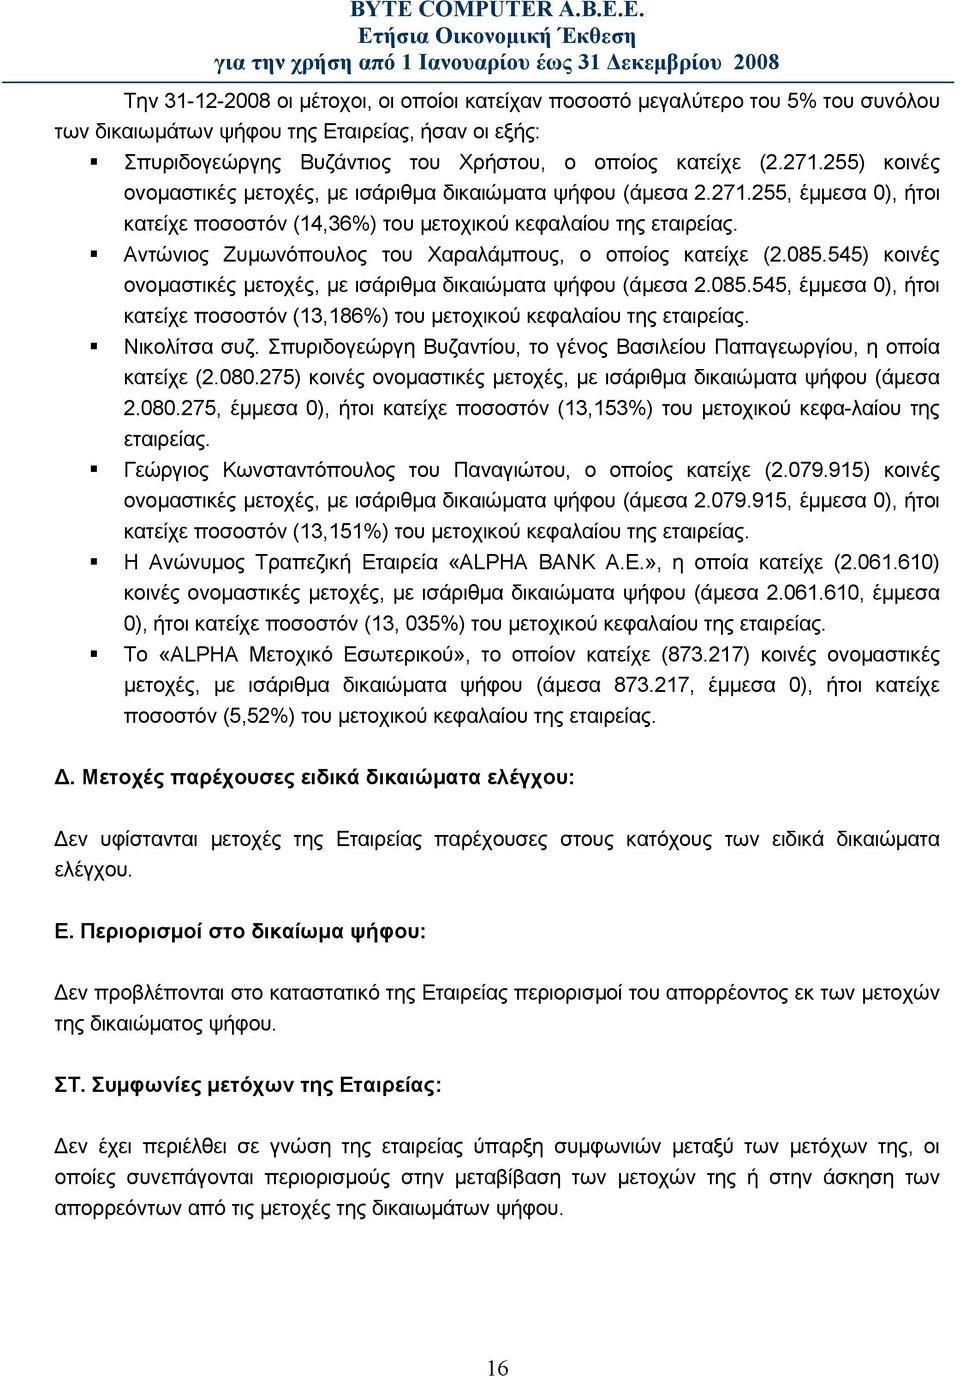 Αντώνιος Ζυμωνόπουλος του Χαραλάμπους, ο οποίος κατείχε (2.085.545) κοινές ονομαστικές μετοχές, με ισάριθμα δικαιώματα ψήφου (άμεσα 2.085.545, έμμεσα 0), ήτοι κατείχε ποσοστόν (13,186%) του μετοχικού κεφαλαίου της εταιρείας.